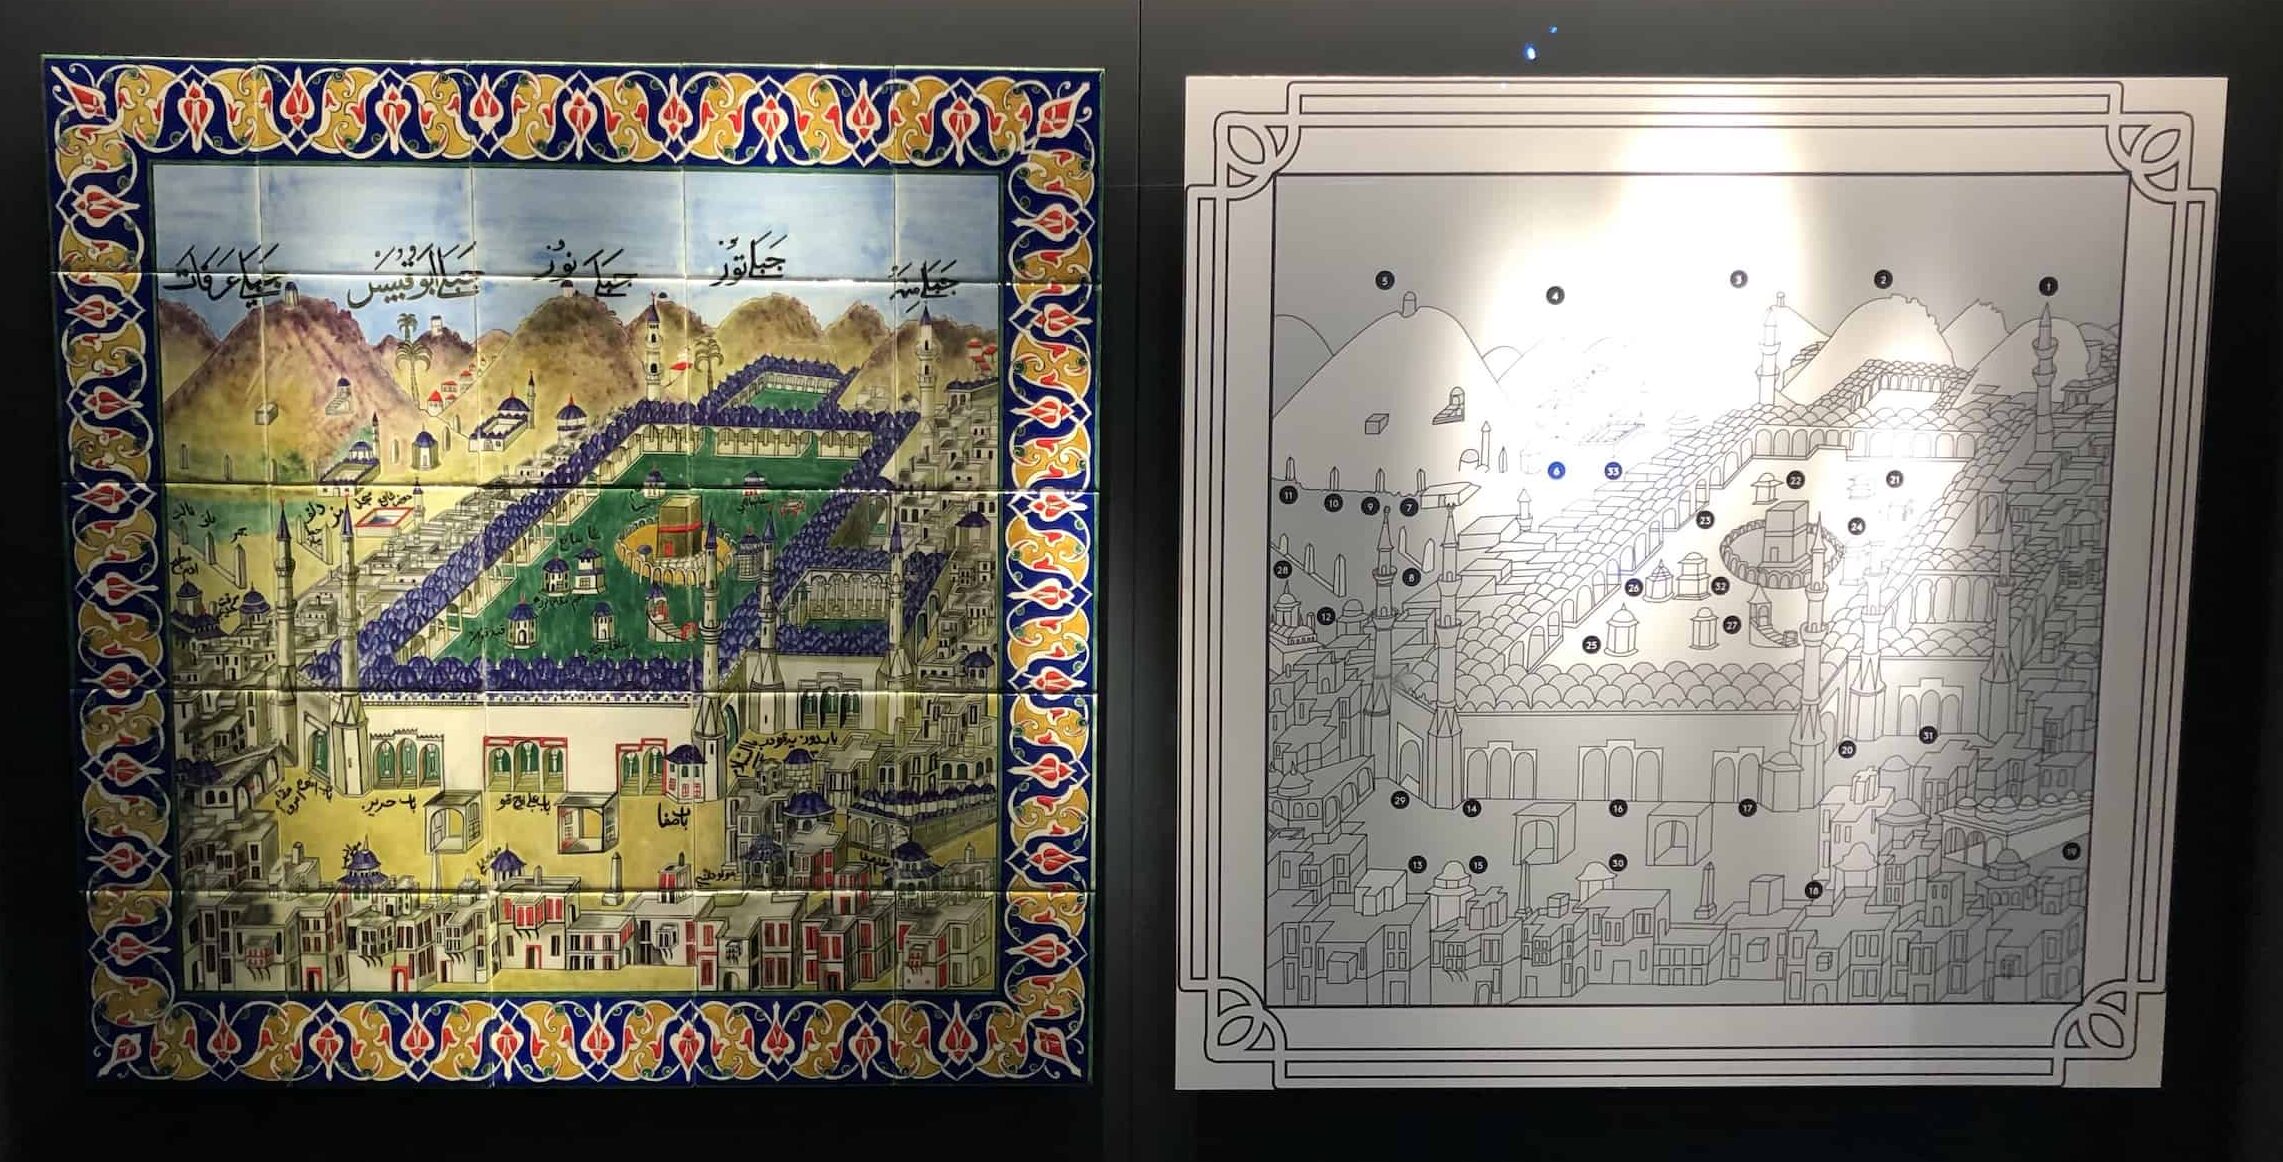 Replica tiles depicting Mecca at the Tekfur Palace Museum